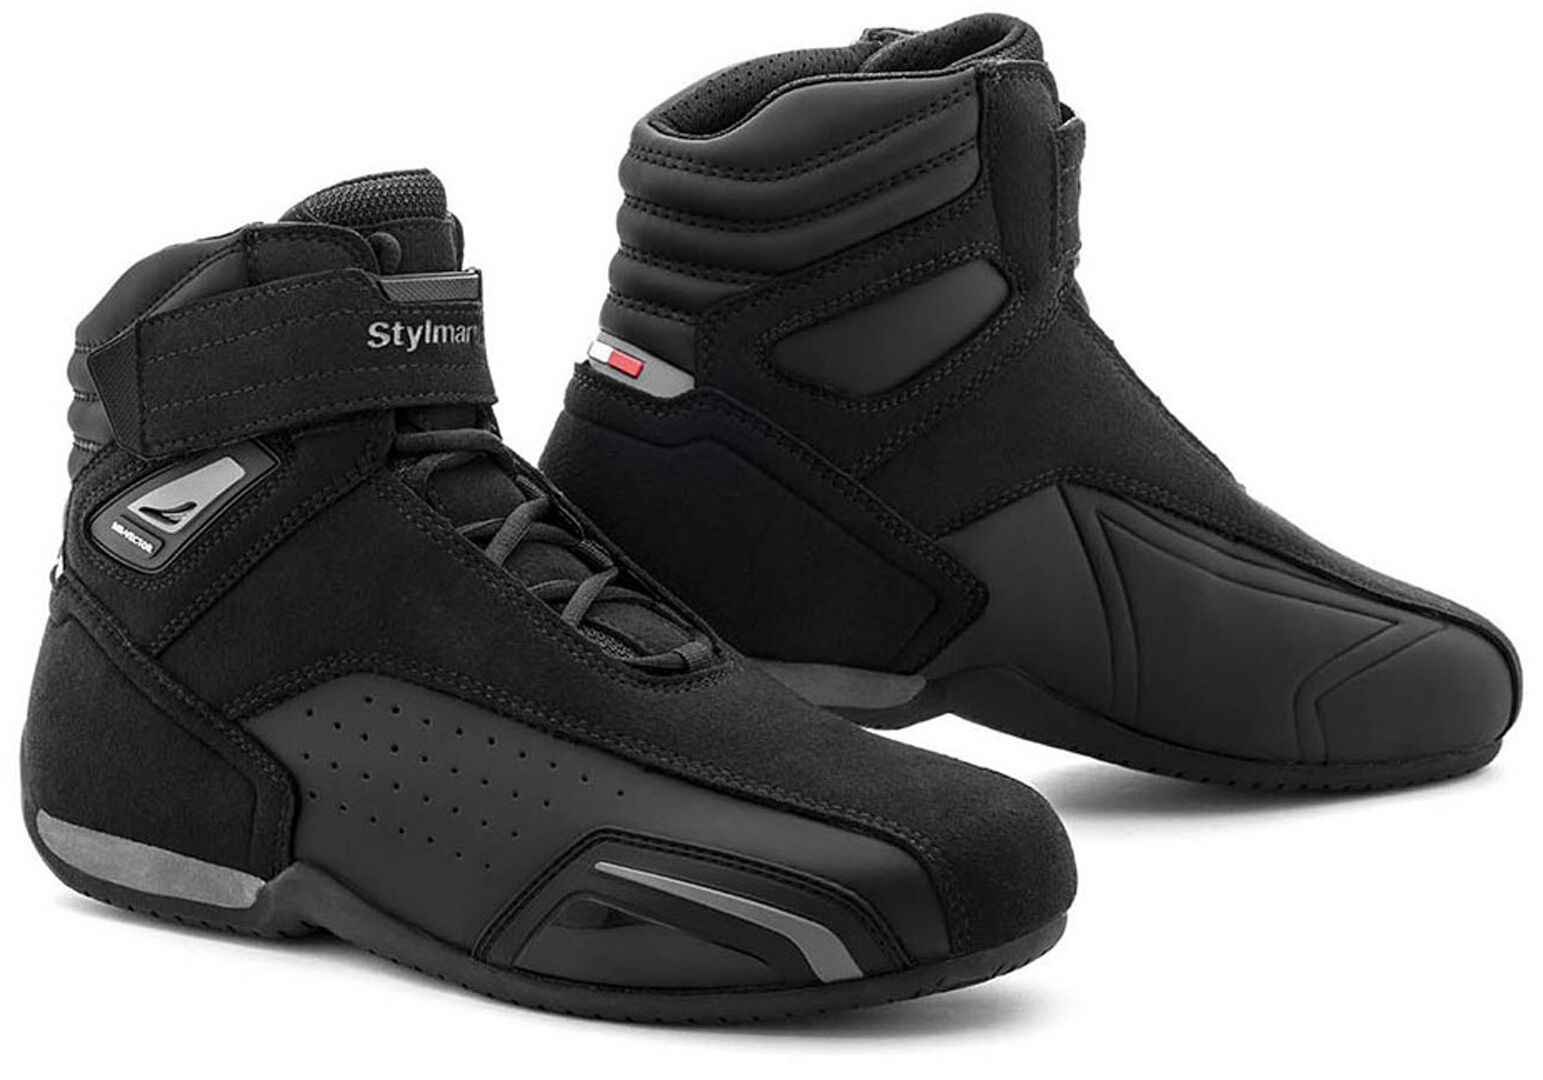 Stylmartin Vector Air Zapatos de moto - Negro (42)